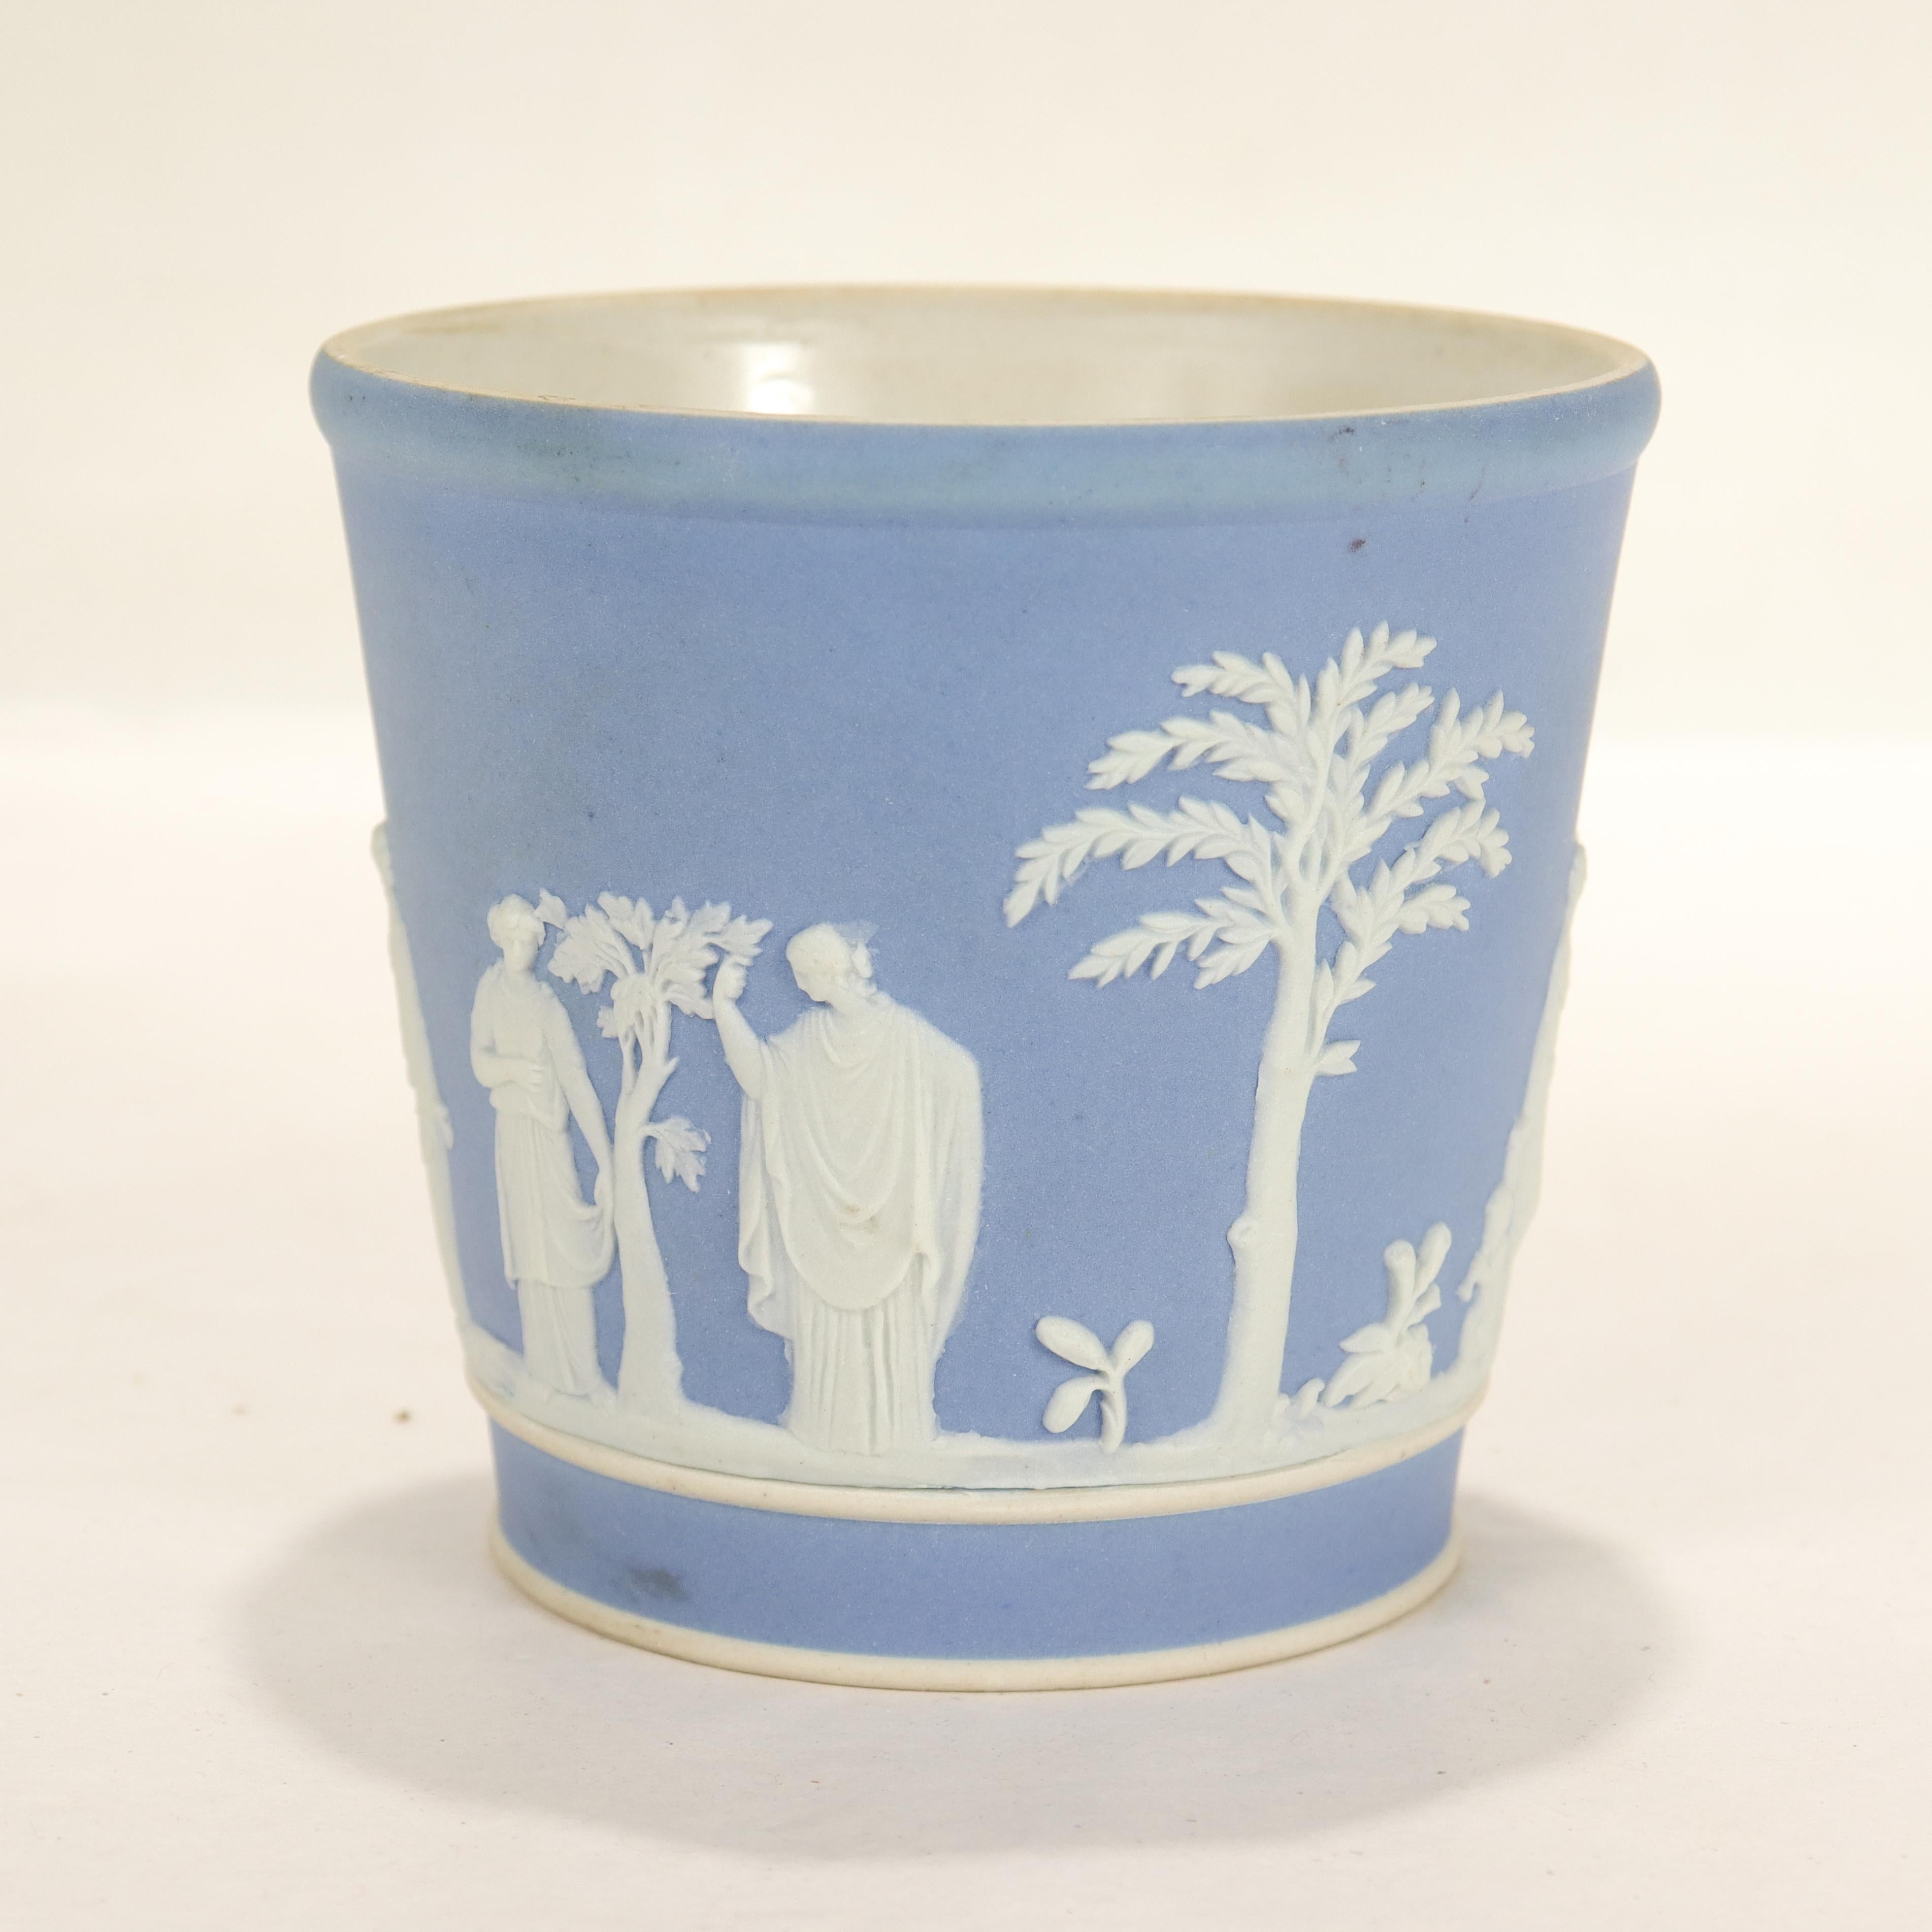 Un beau gobelet ou tasse antique en jaspe.

En bleu Wedgwood avec un décor en relief blanc représentant des hommes, des femmes, des enfants et des arbres dans un style classique.

Nous supposons qu'il a été utilisé comme gobelet ou récipient à